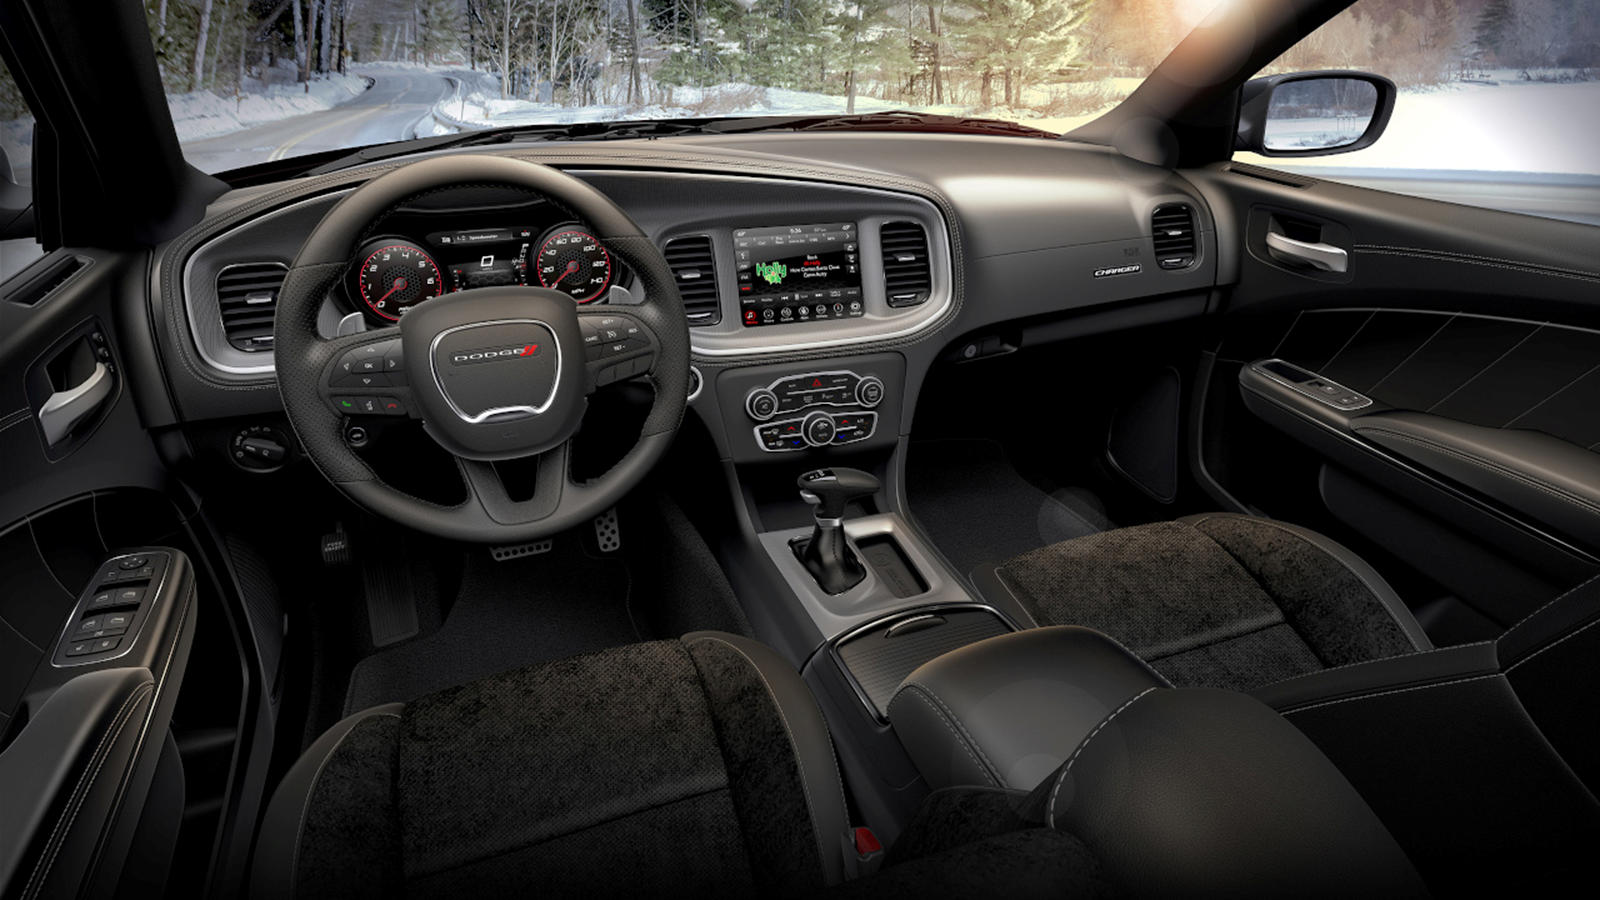 Дилеры смогут начать размещение заказов на новый 2020 Dodge Charger GT AWD, начиная с января. Начальная цена автомобиля составит 34 995 долларов США до налогов и сборов, с 3,6-литровым V6 мощностью 300 лошадиных сил и крутящим моментом в 357 Нм - так